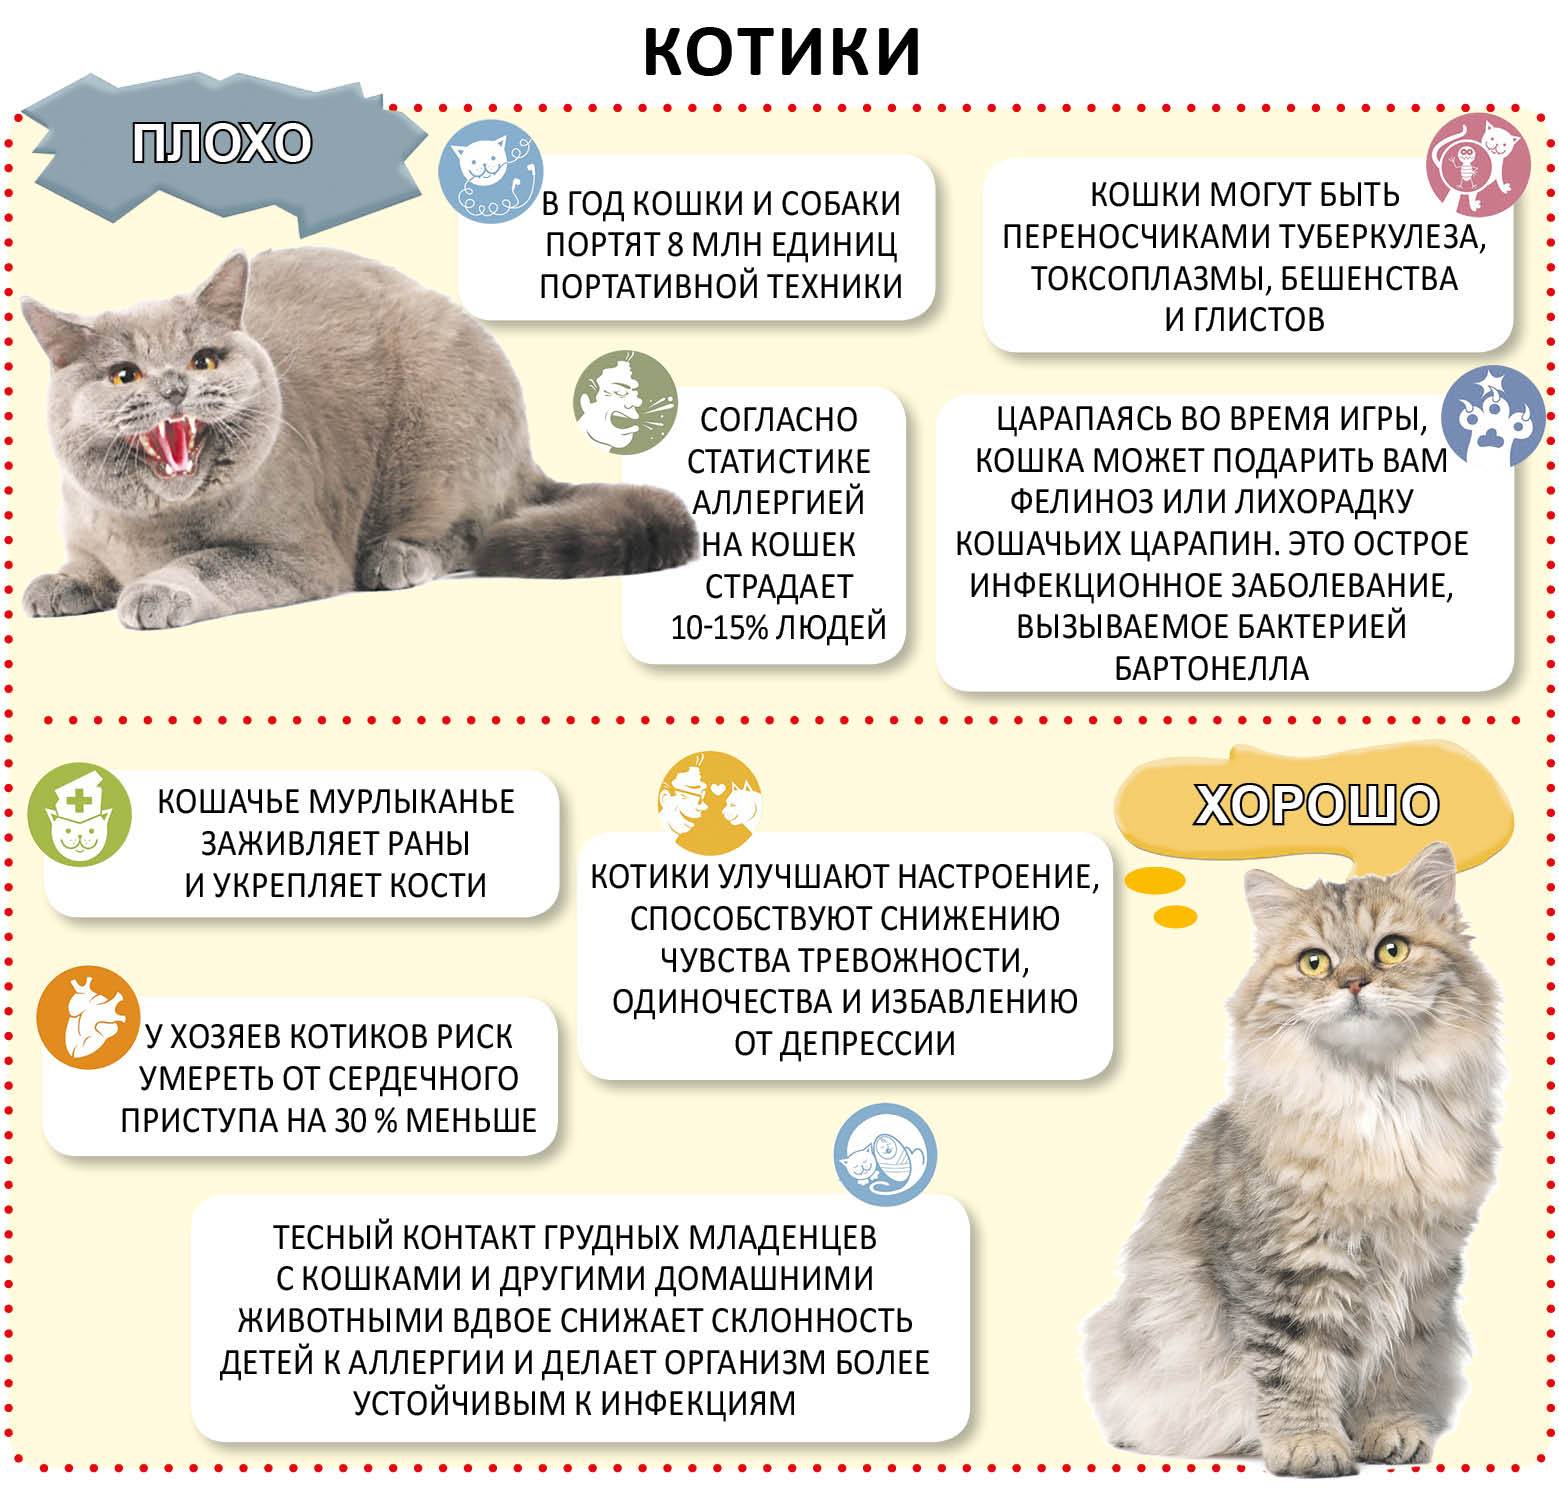 Как часто нужно глистогонить кошку? лямблиоз и токсоплазмоз.